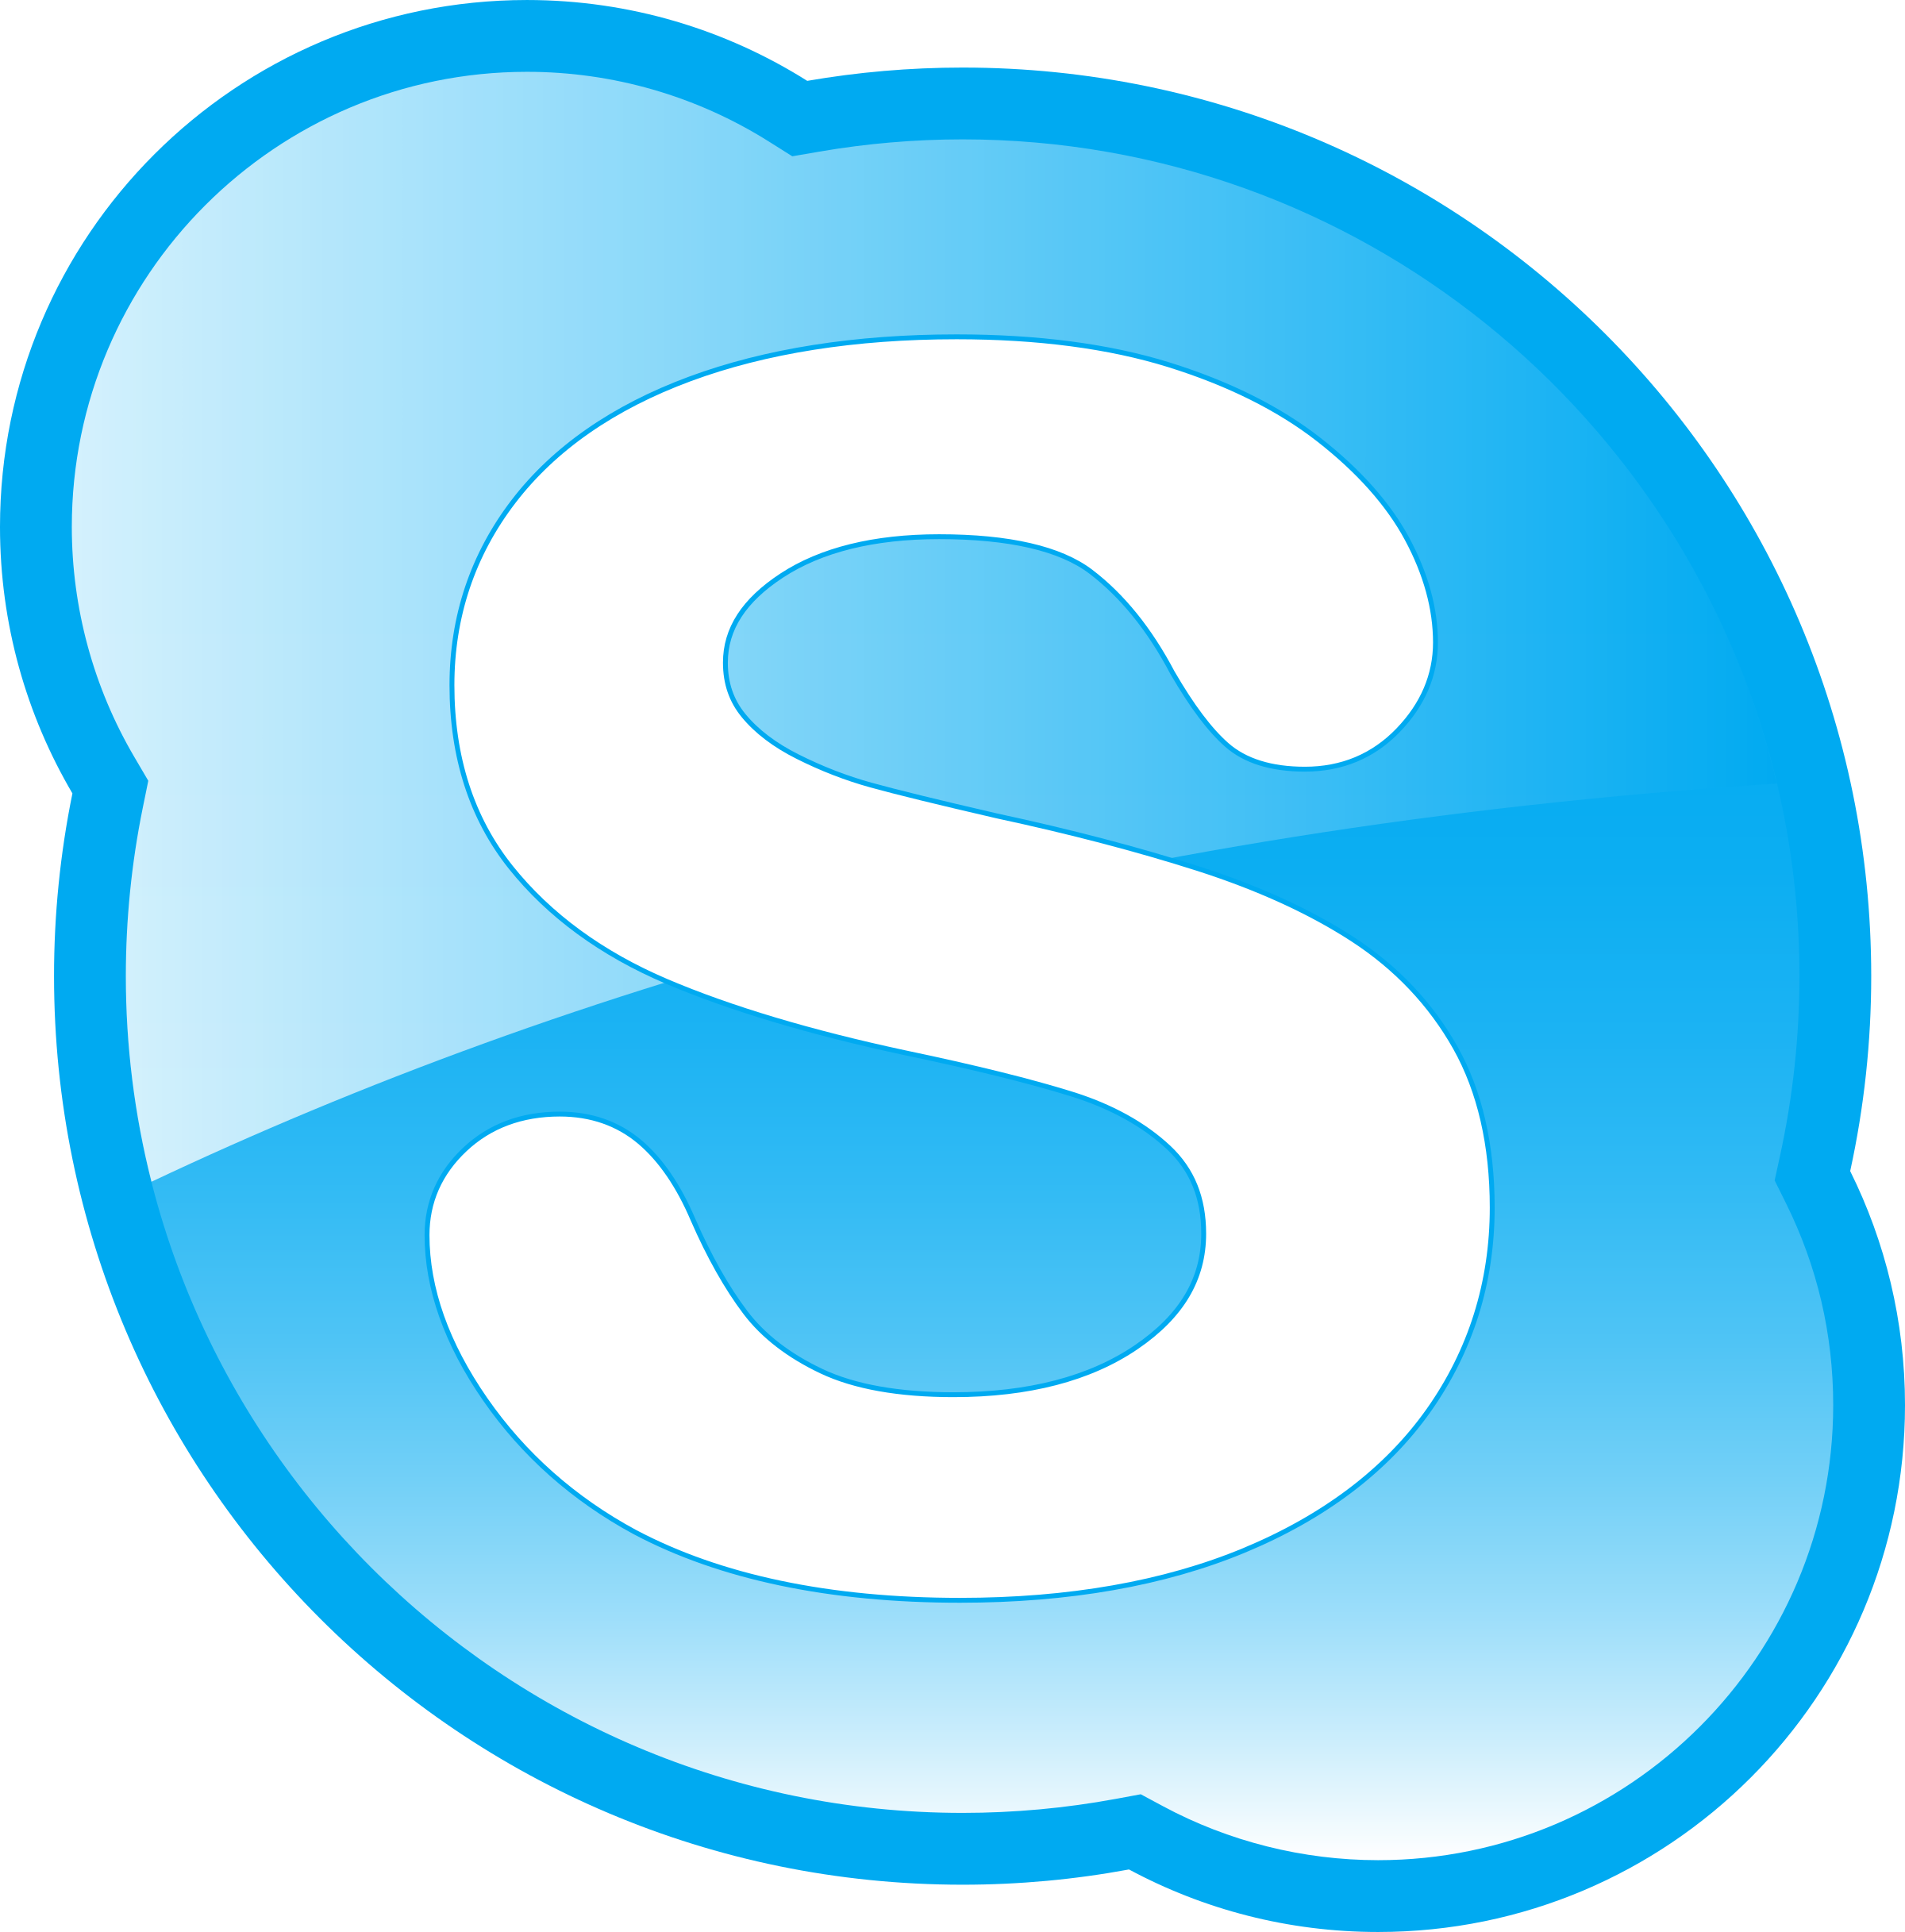 skype icon small